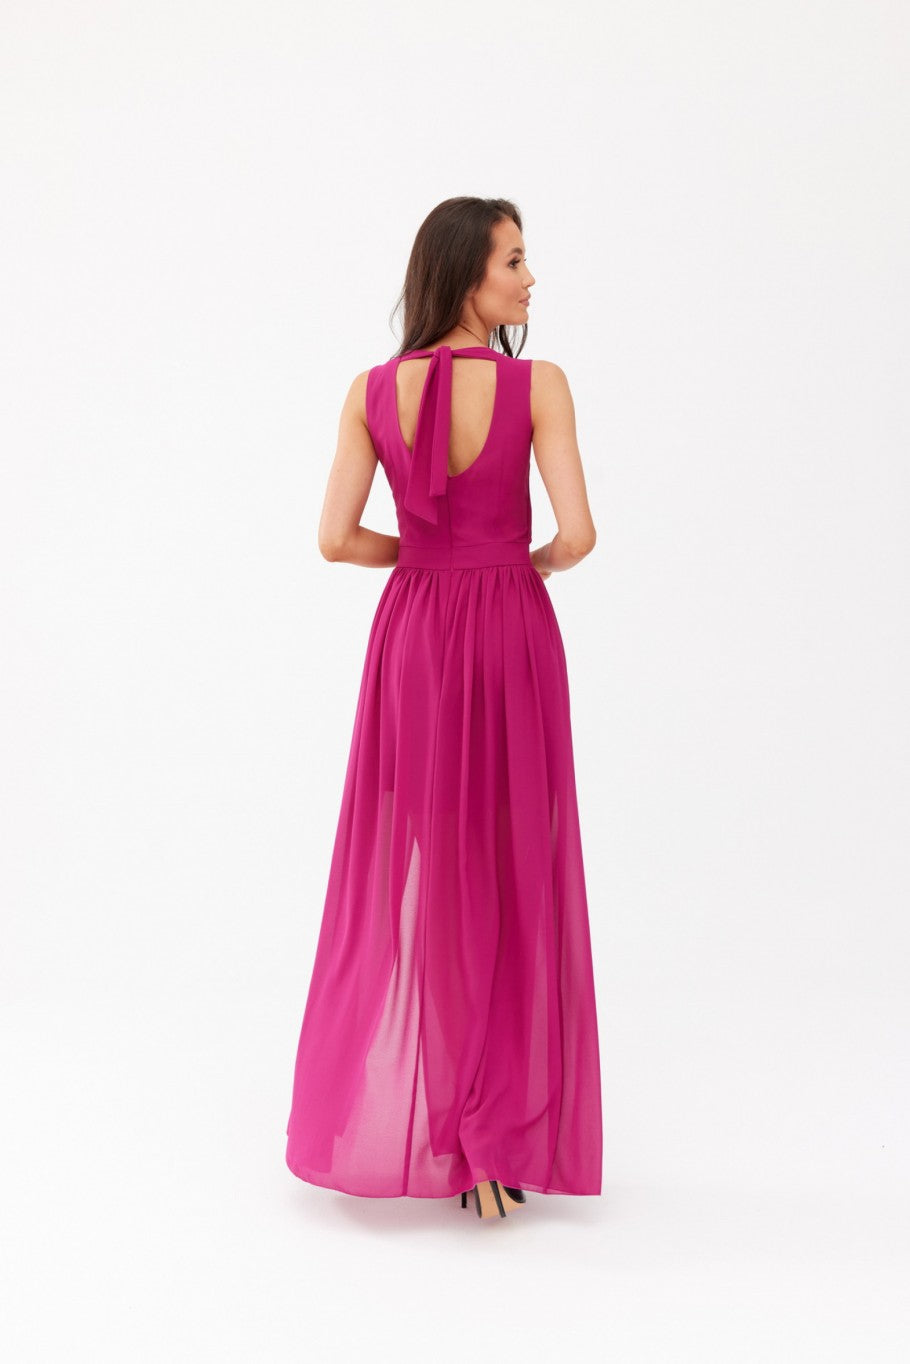 Mirabela - purpurowa sukienka maxi z kopertowym dekoltem i wiązaniem na plecach